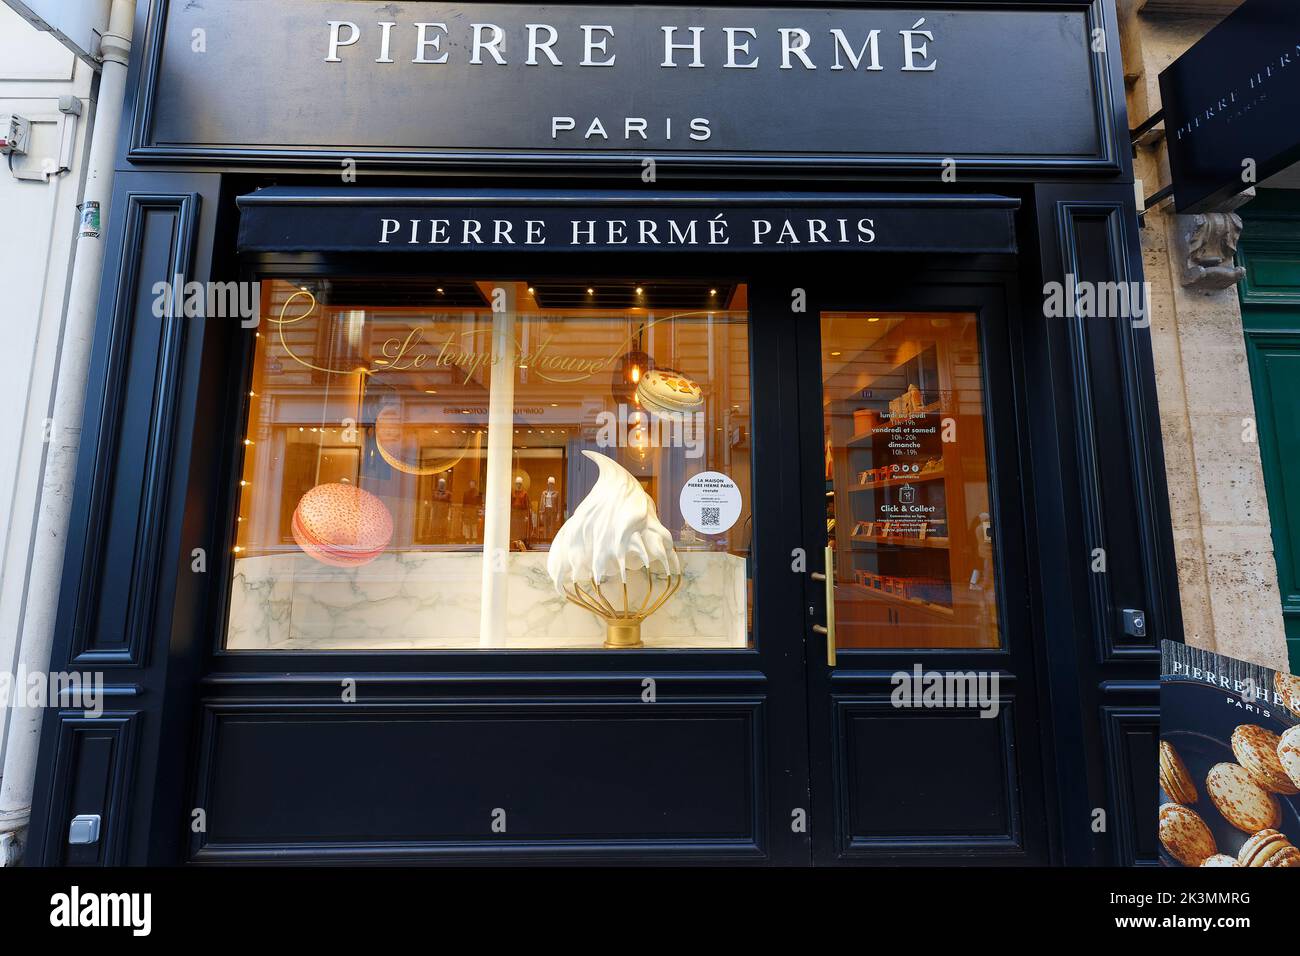 Vue extérieure de la pâtisserie du célèbre chef pâtissier français Pierre Herme, dans le centre de Paris, dans le quartier de Saint Germain. Banque D'Images